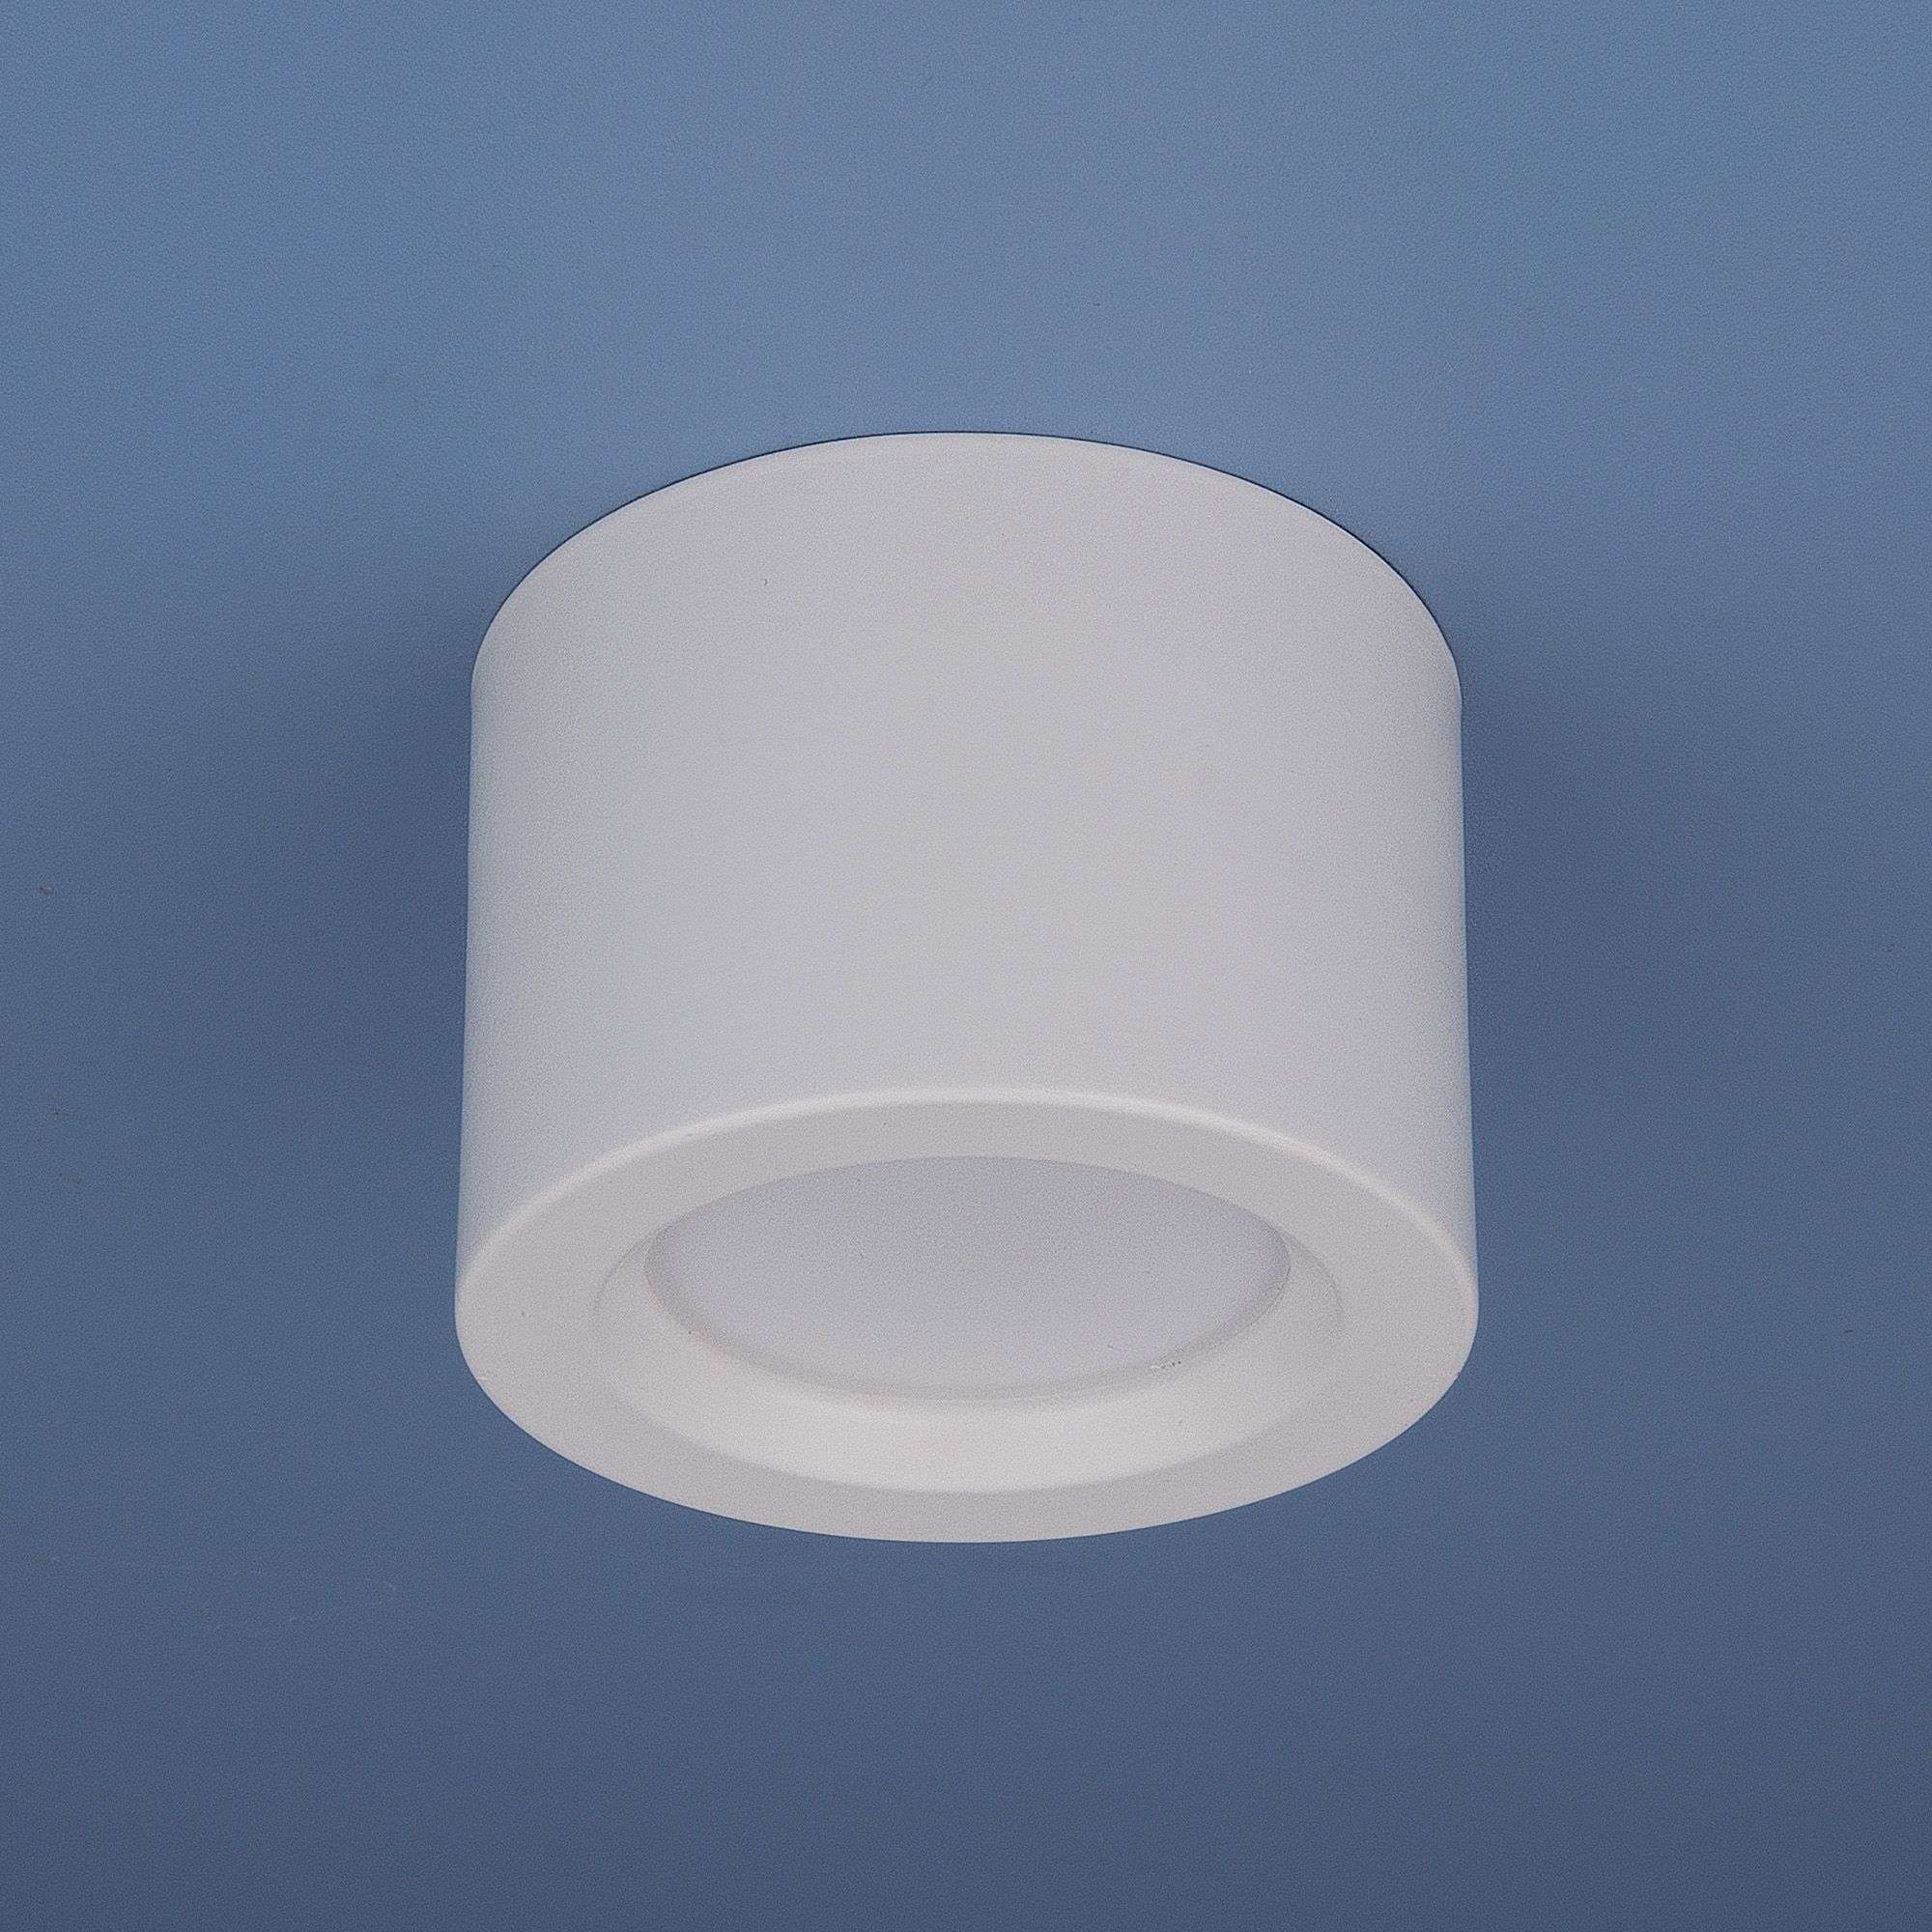 Накладной потолочный  светодиодный светильник DLR026 6W 4200K белый матовый. Фото 3